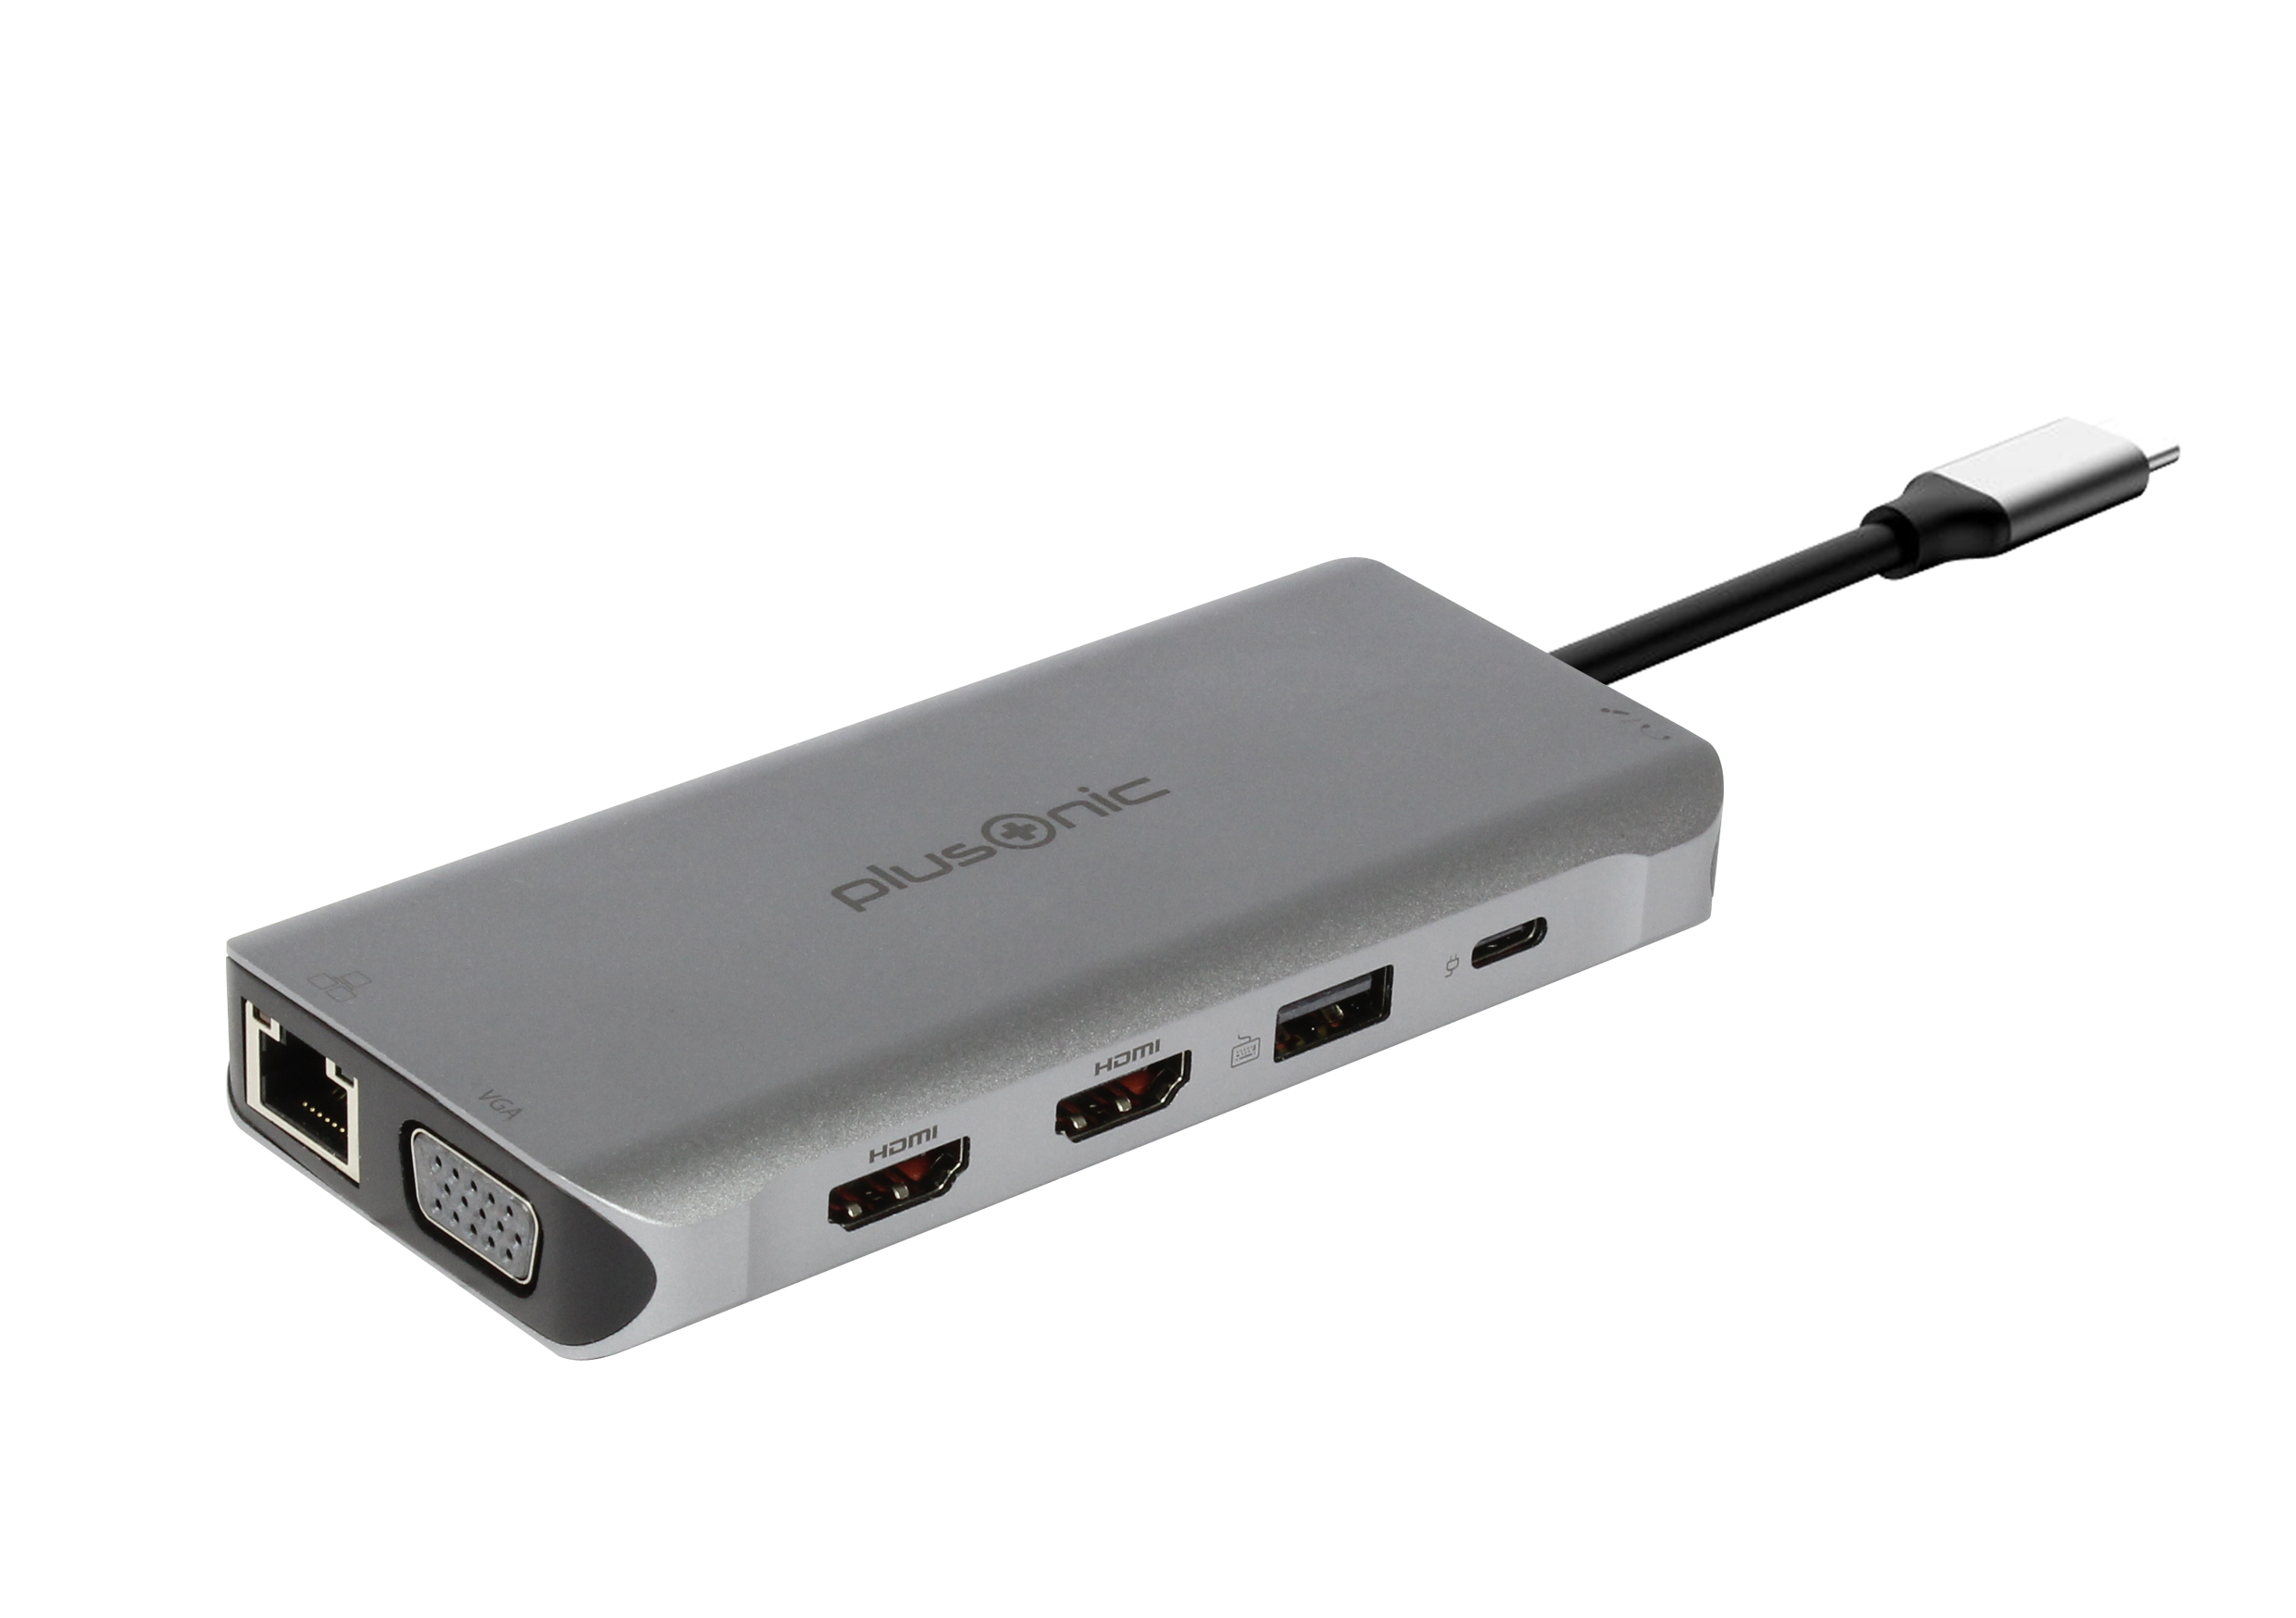 Plusonic USB-C Docking Adapter/Hub 8in1 with HDMI/VGA/LAN/USB